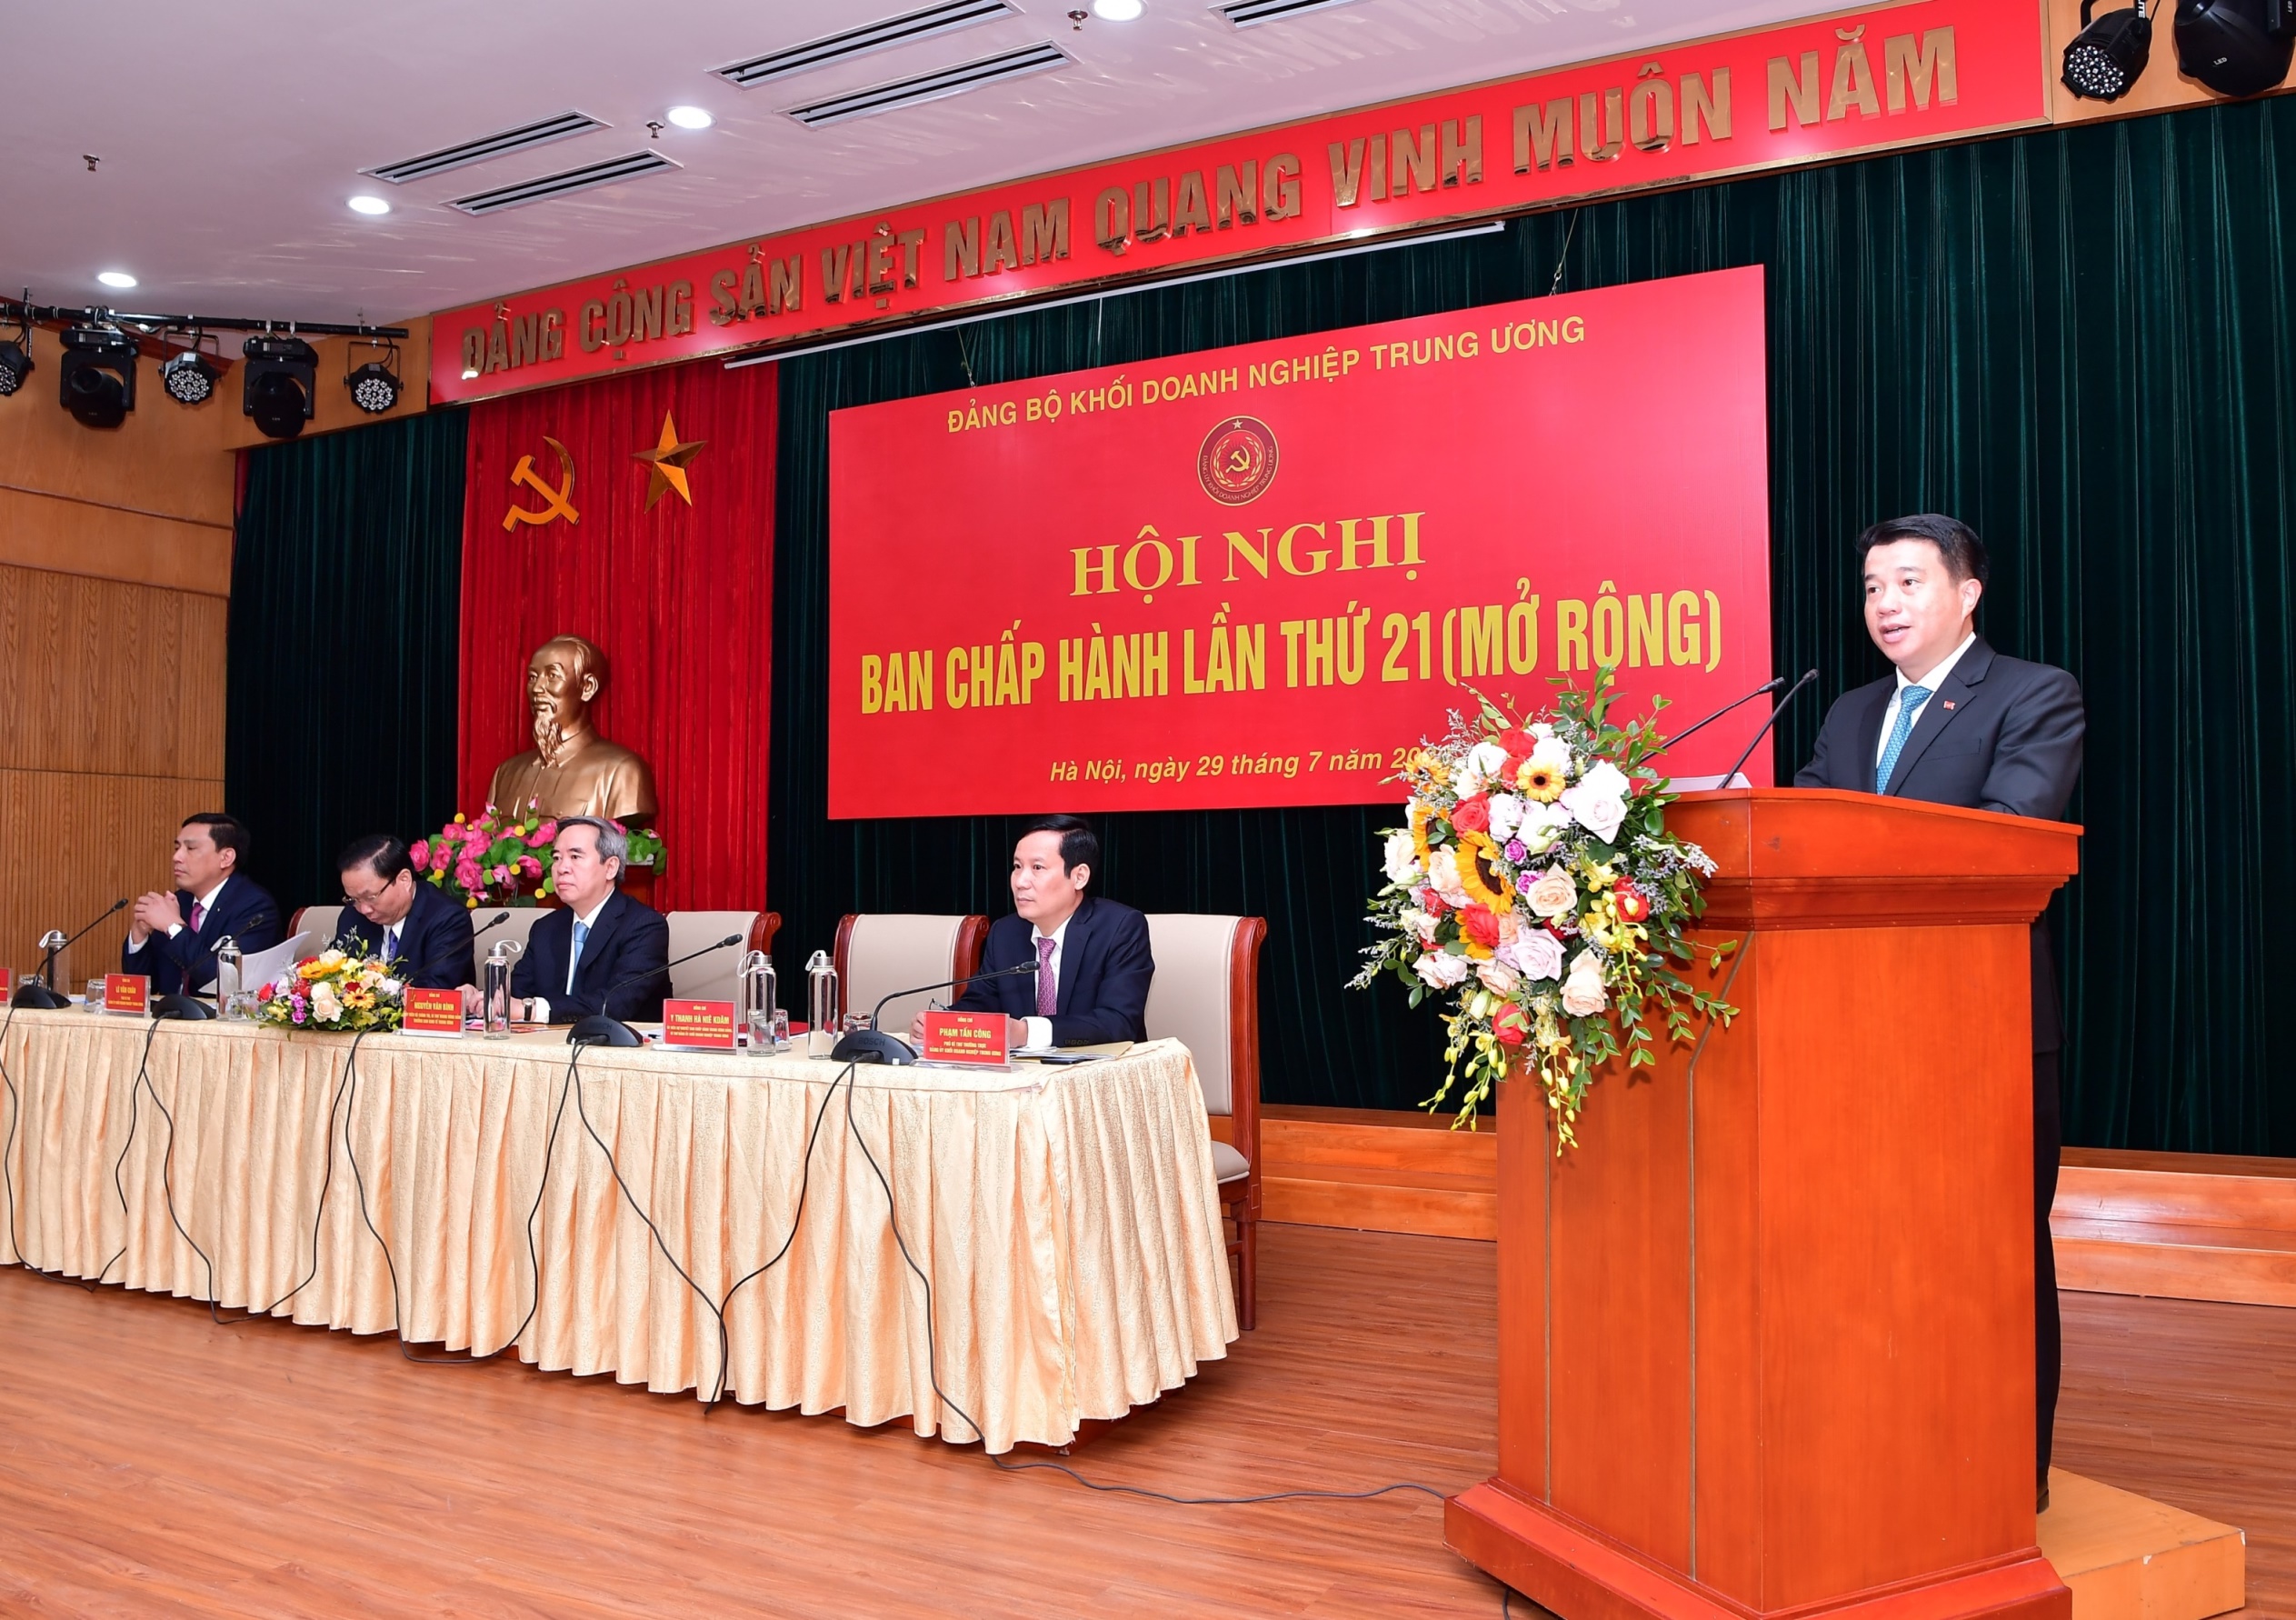 Chủ tịch HĐQT Vietcombank giữ chức  Ủy viên Ban Thường vụ Đảng ủy Khối DNTW